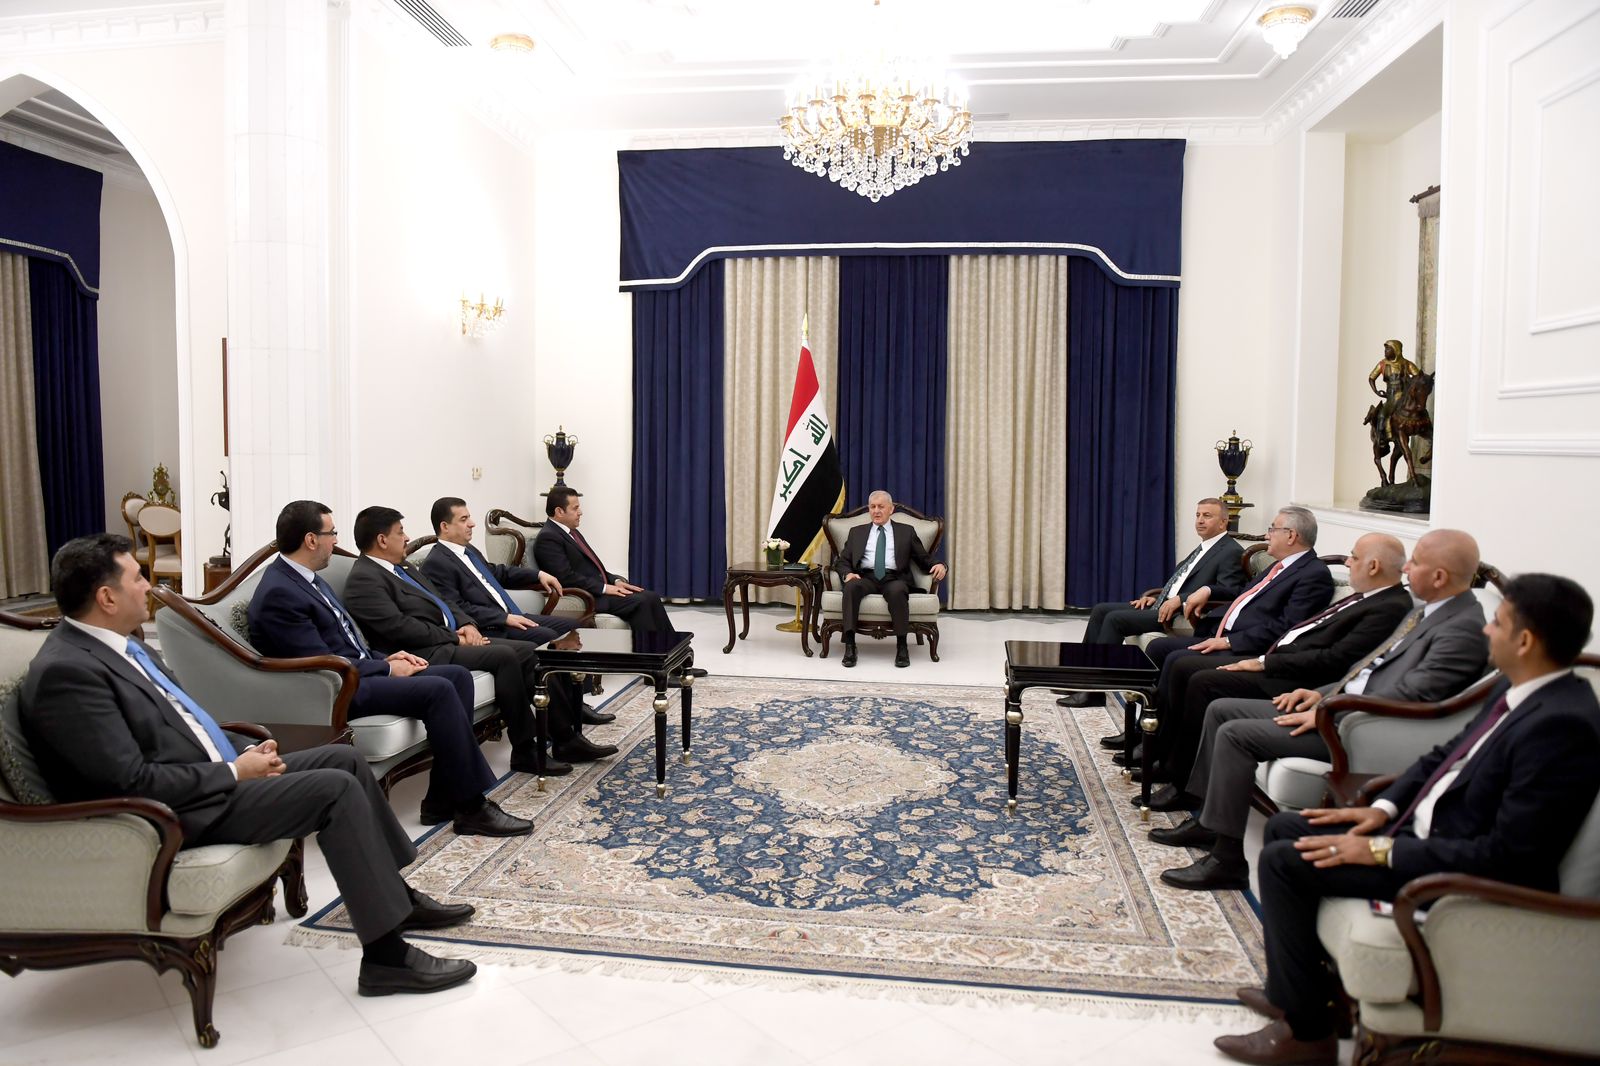 الرئيس العراقي يناقش "التطورات الأخيرة" ويحذر من اتساع دائرة الصراع